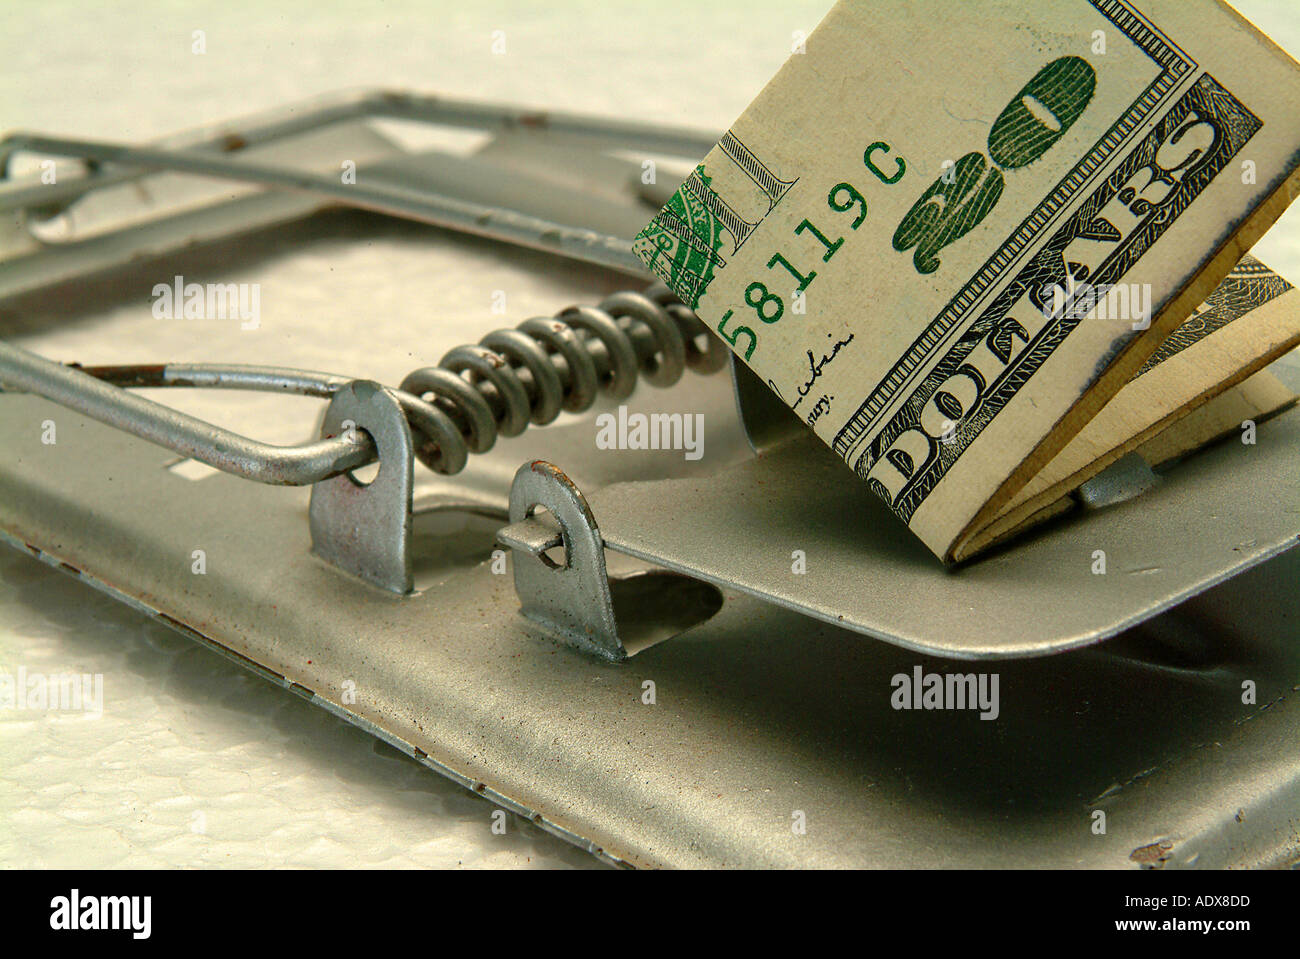 Business Concepts II metal metallic mousetrap piège appât lure leurre capture rat race bill dollar bank note vingt 20 détail de l'argent Banque D'Images